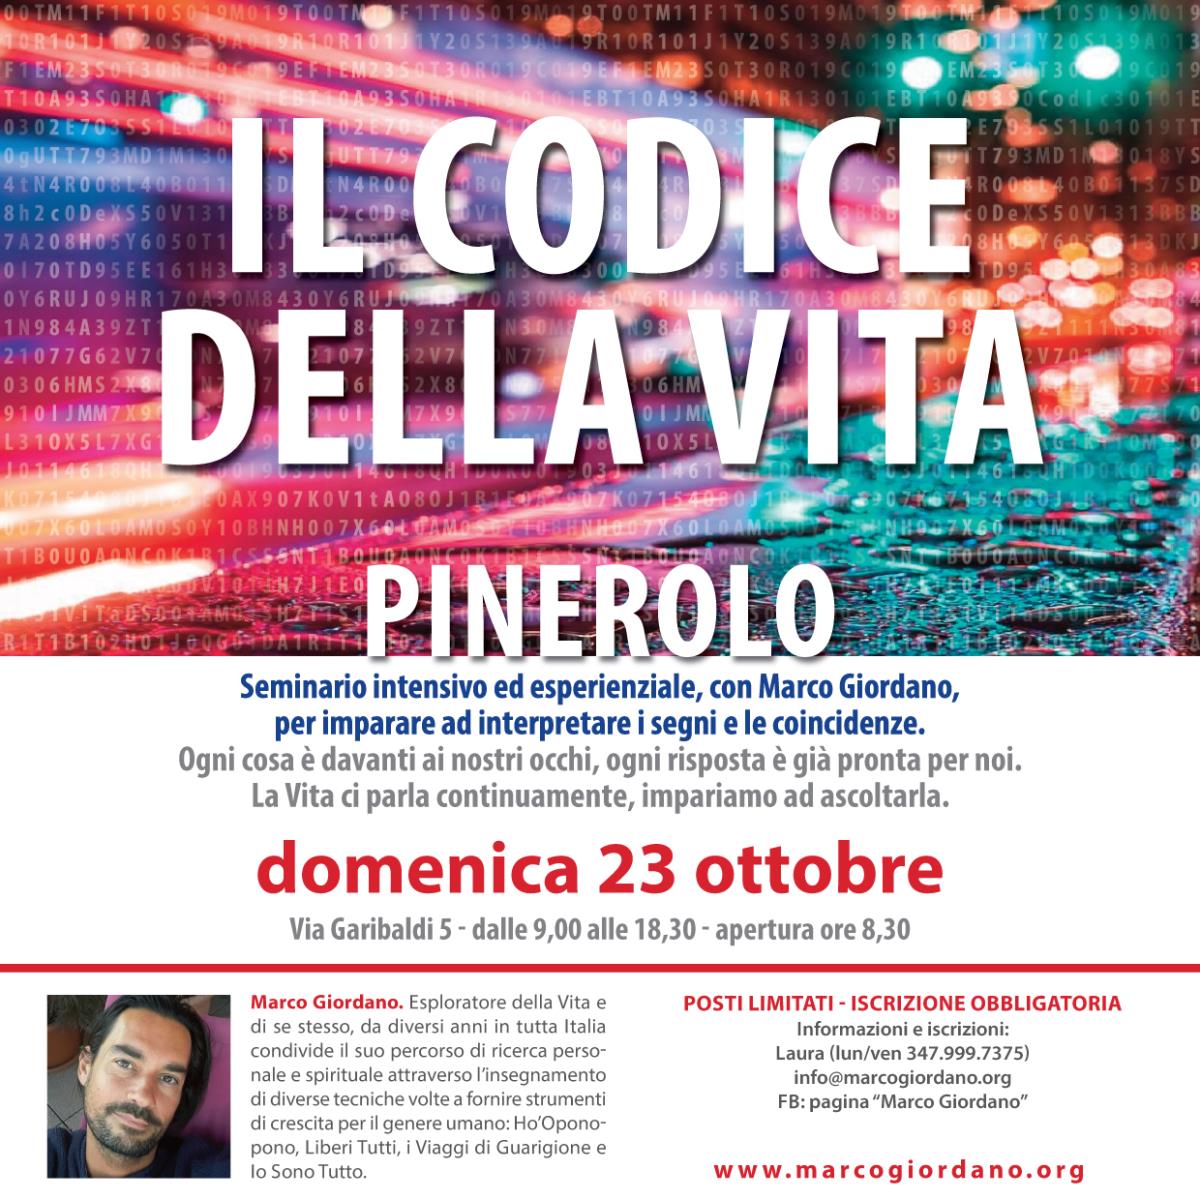 <b>IL CODICE DELLA VITA SEMINARIO</b> domenica 23 ottobre <b>PINEROLO (Torino)